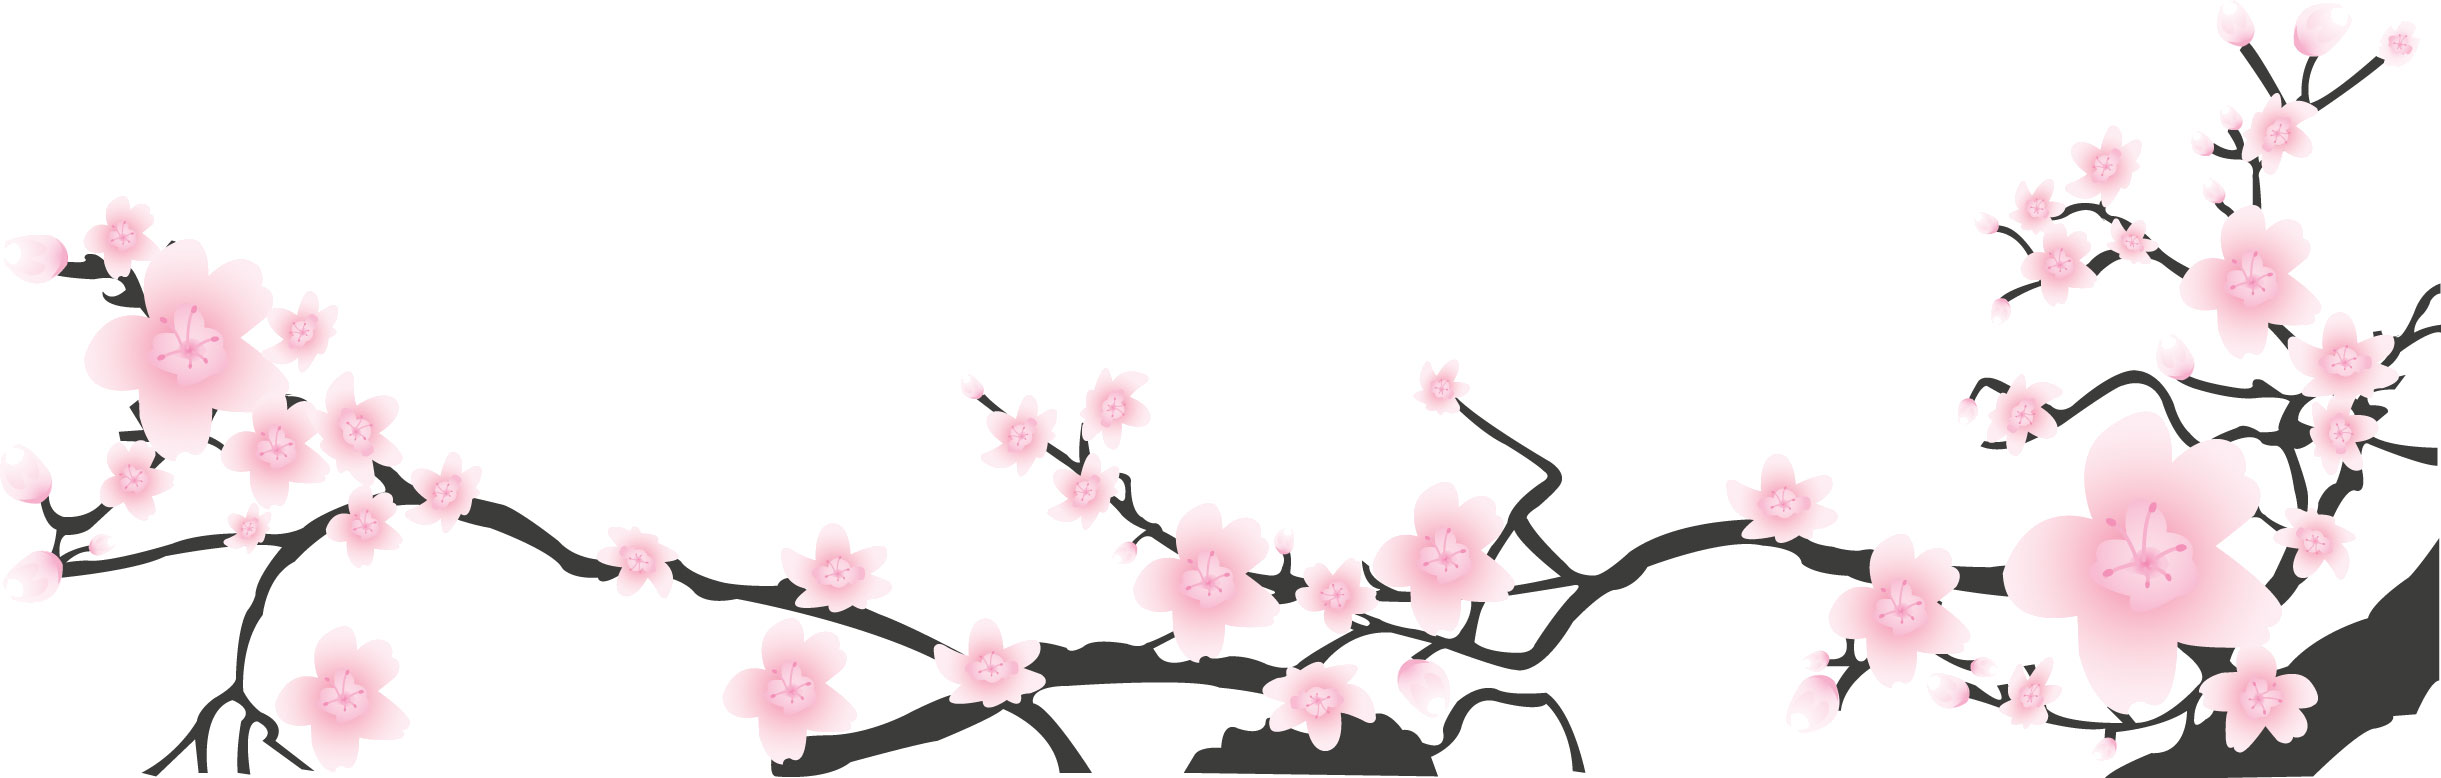 ピンクの花のイラスト フリー素材 No 375 梅 桃 桜 枝